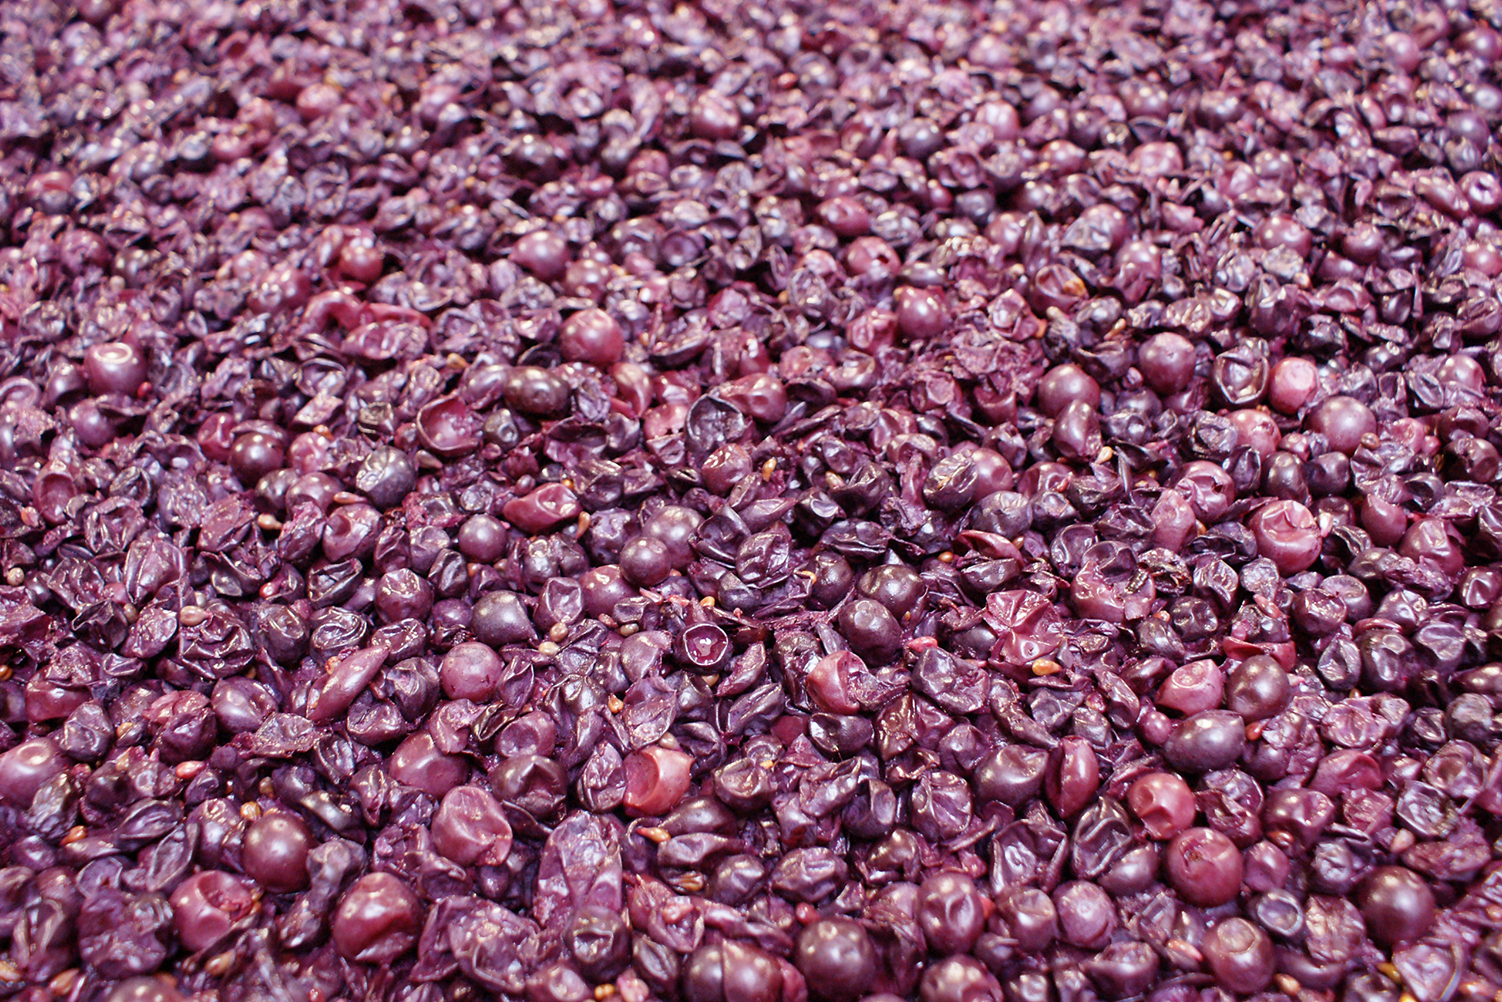 Producción a cielo abierto de uva para valor agregado en vino de mesa en el estado de Baja California Norte